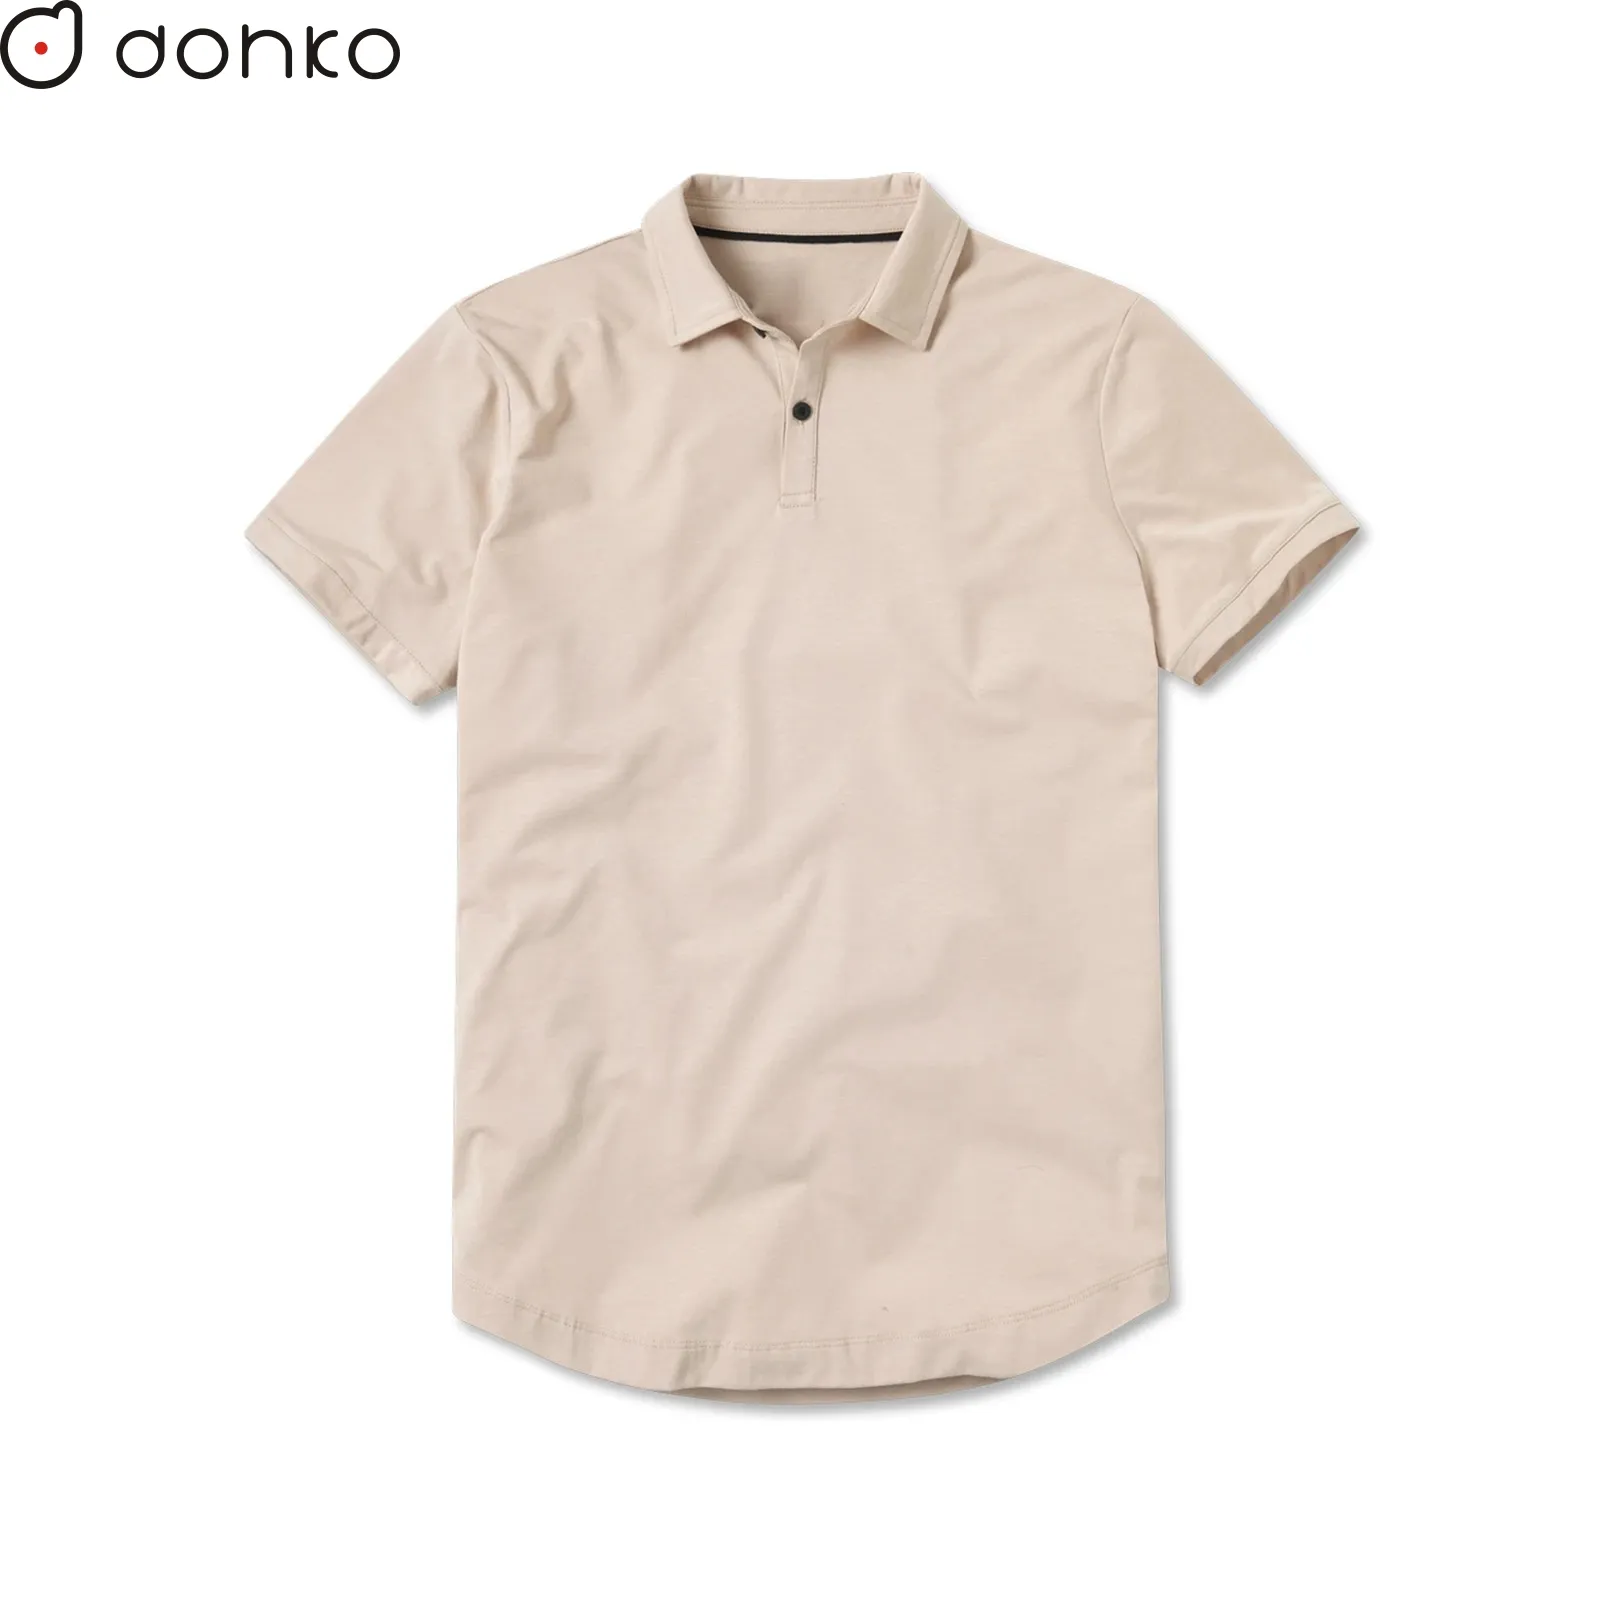 プリントまたは刺繍ロゴ付きのカスタムヘビーTシャツプレミアム生地綿100% Tシャツ